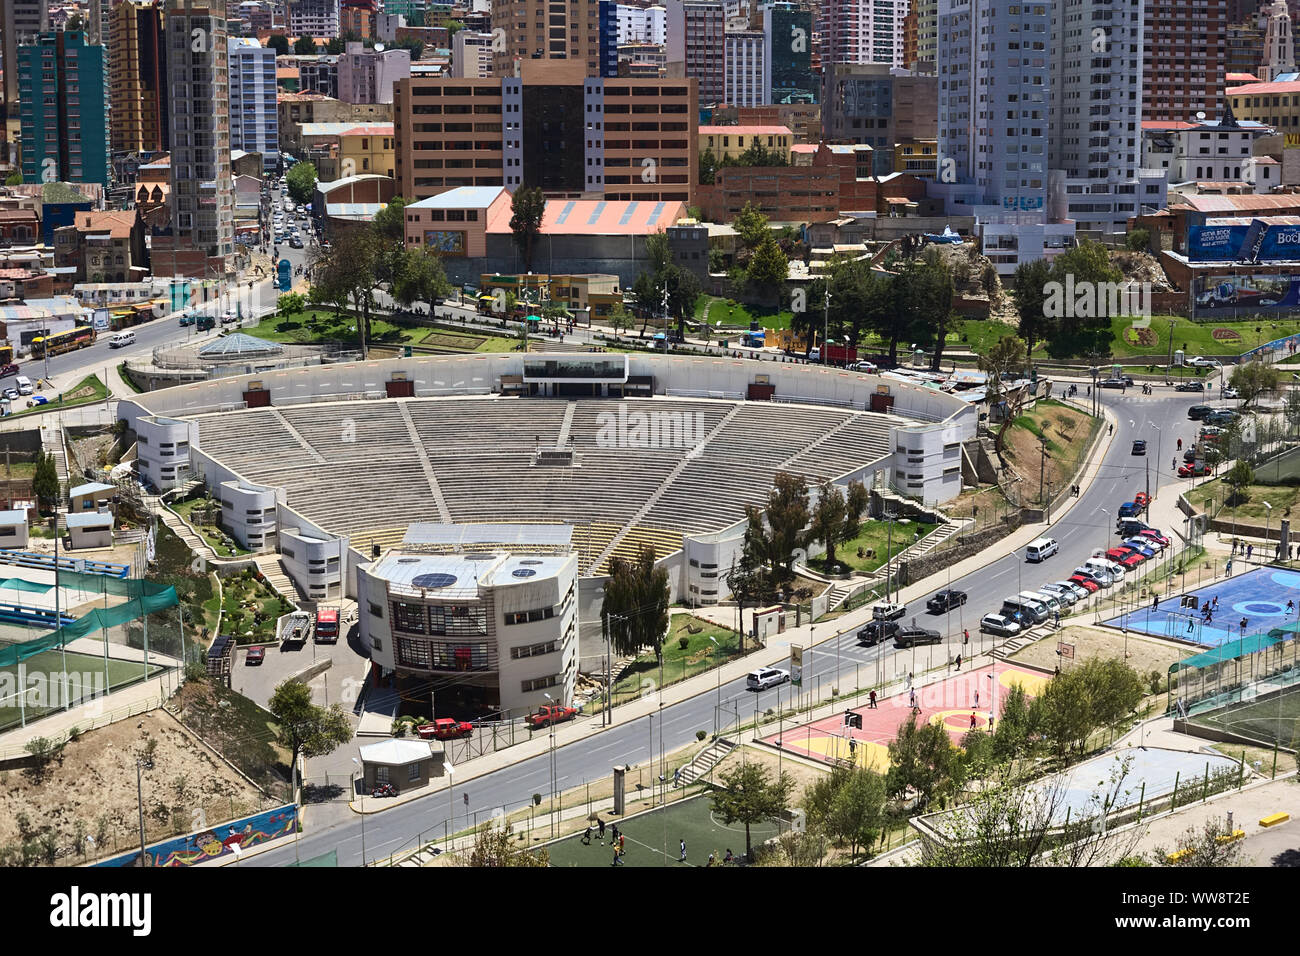 LA PAZ, BOLIVIA - OCTOBER 14, 2014: Open air theater next to the Parque Urbano Central (Central Urban Park) along Avenida del Poeta in La Paz, Bolivia Stock Photo